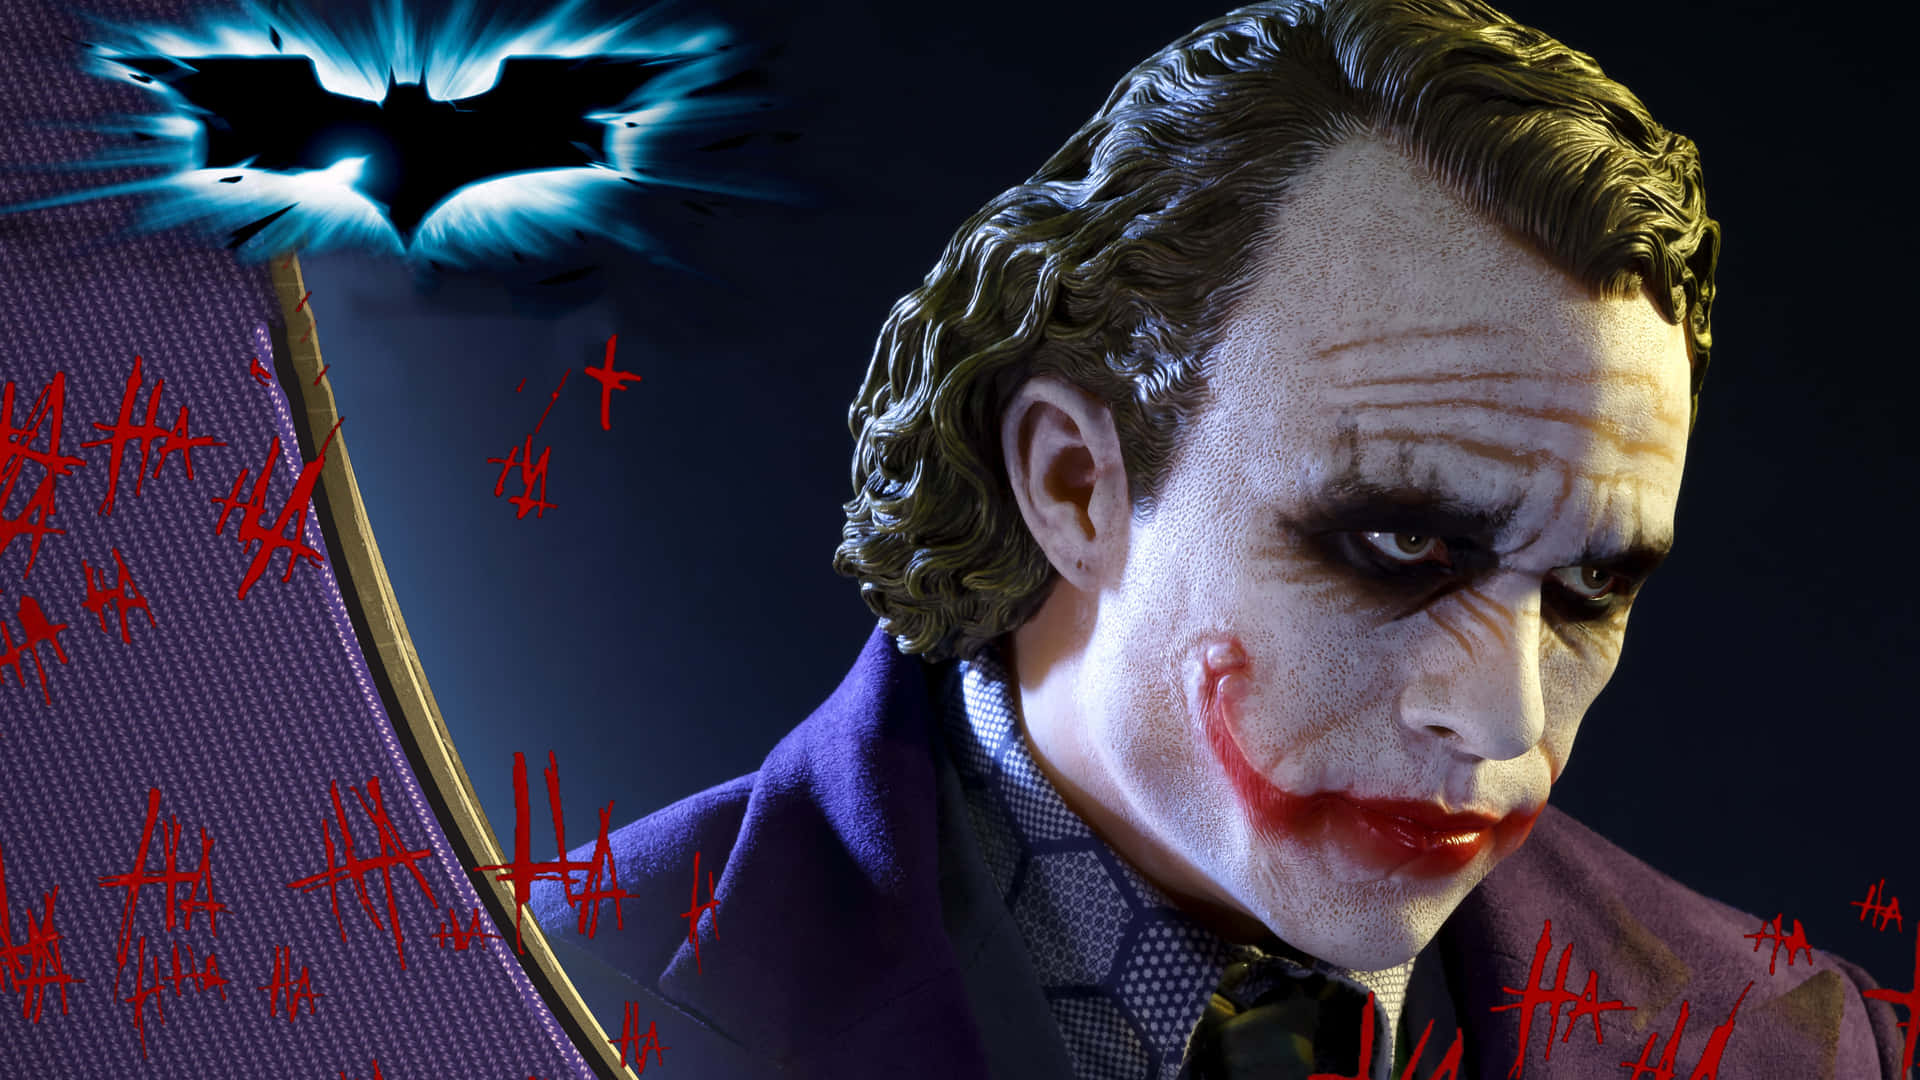 Jokerntar Plats I Huvudrollen I Den Ultimata Upplevelsen Av Hög Upplösning - The Dark Knight I 4k Ultra Hd. Wallpaper